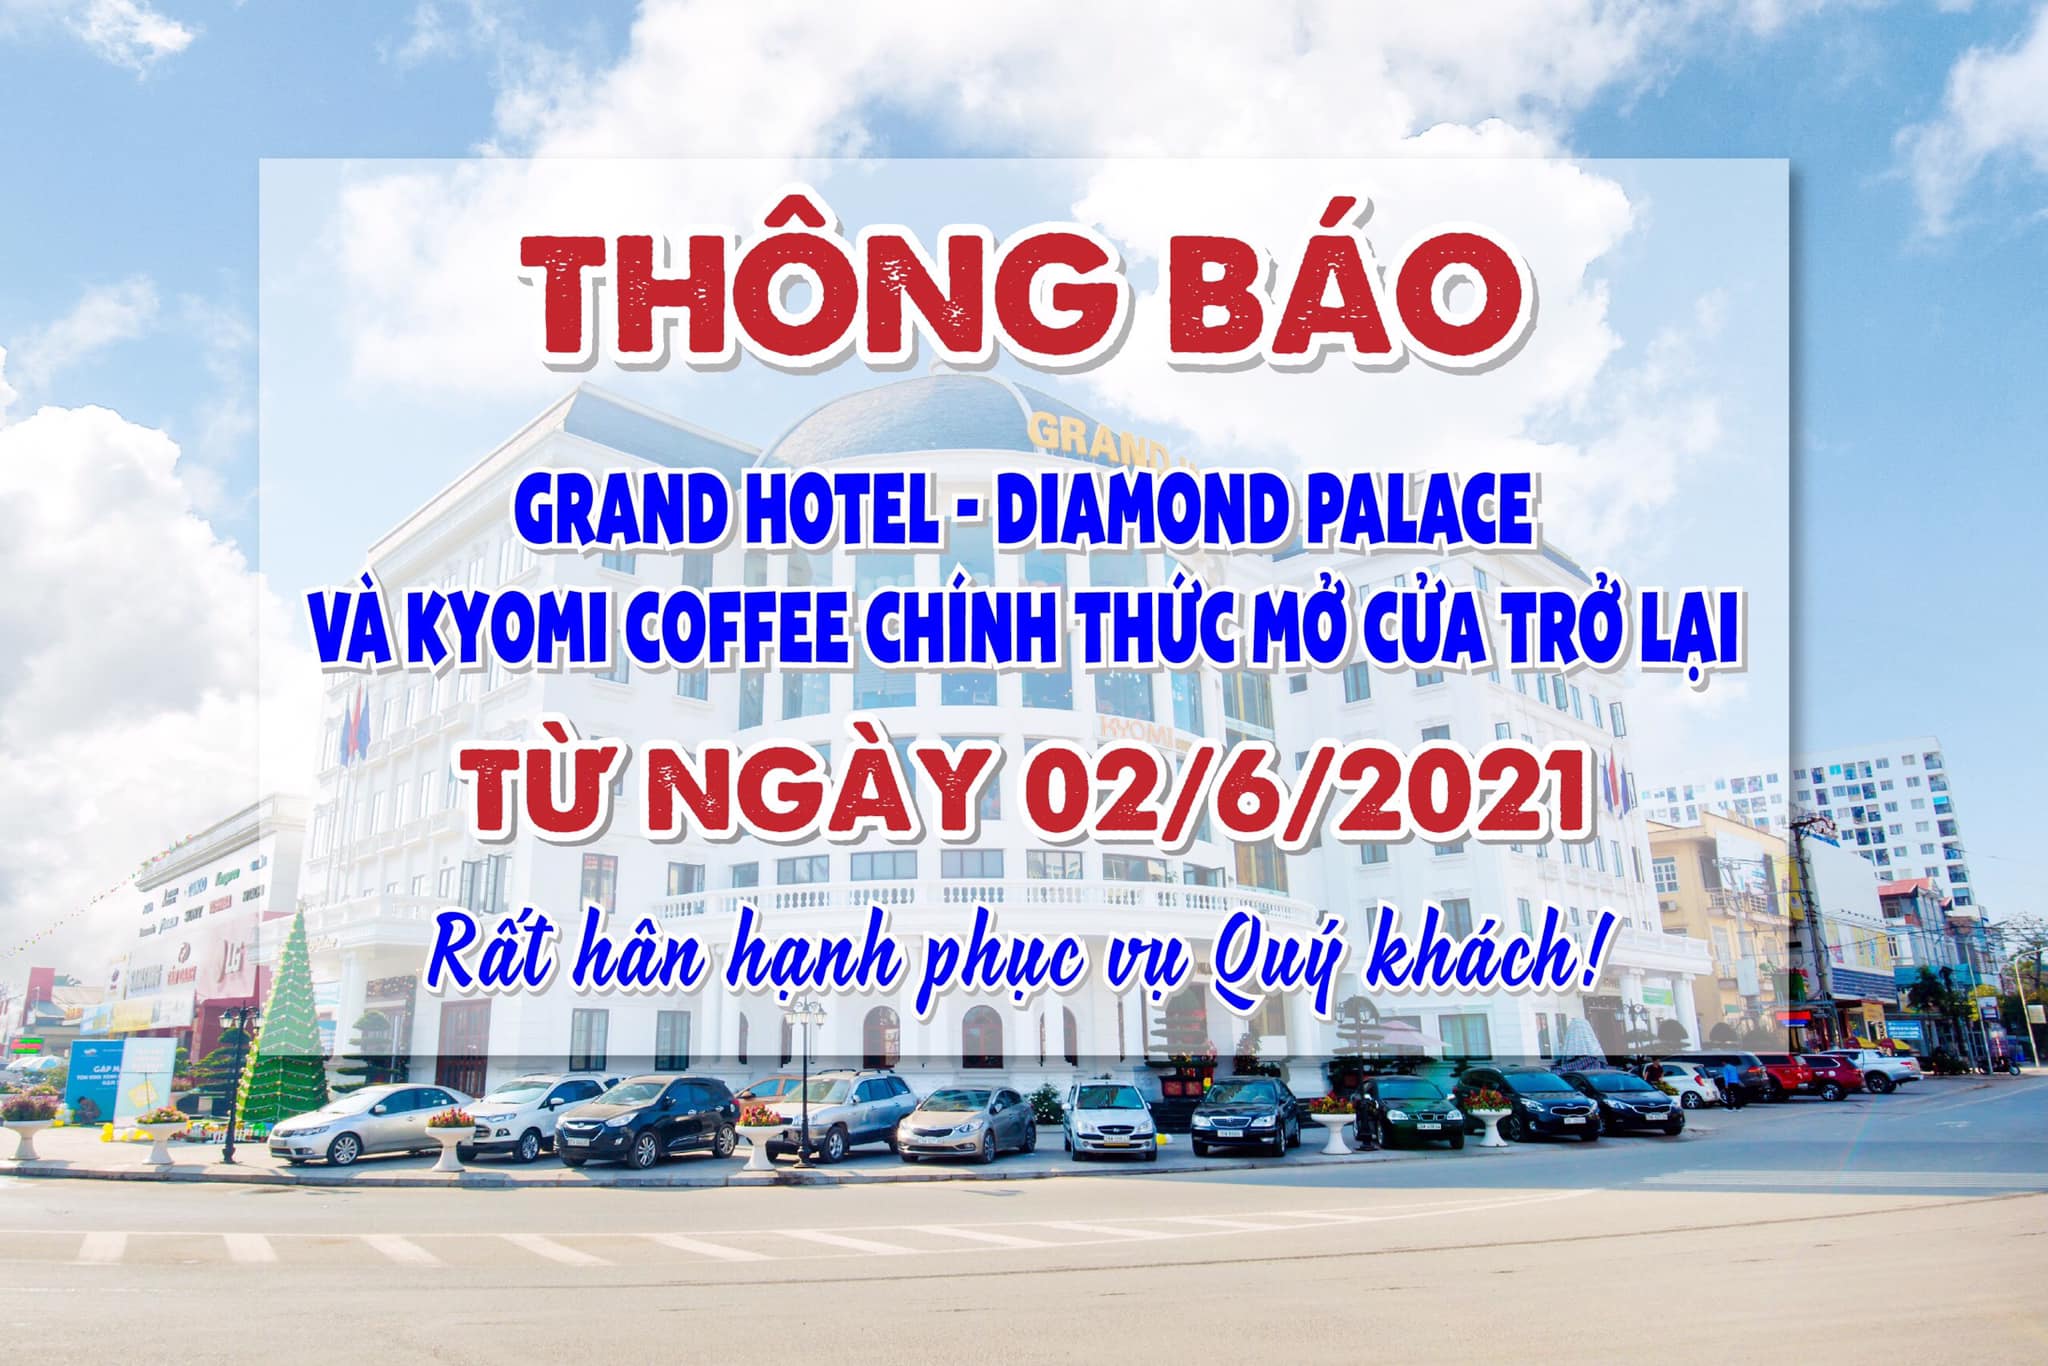 Grand Hotel - Diamond Palace - Kyomi chính thức hoạt động trở lại